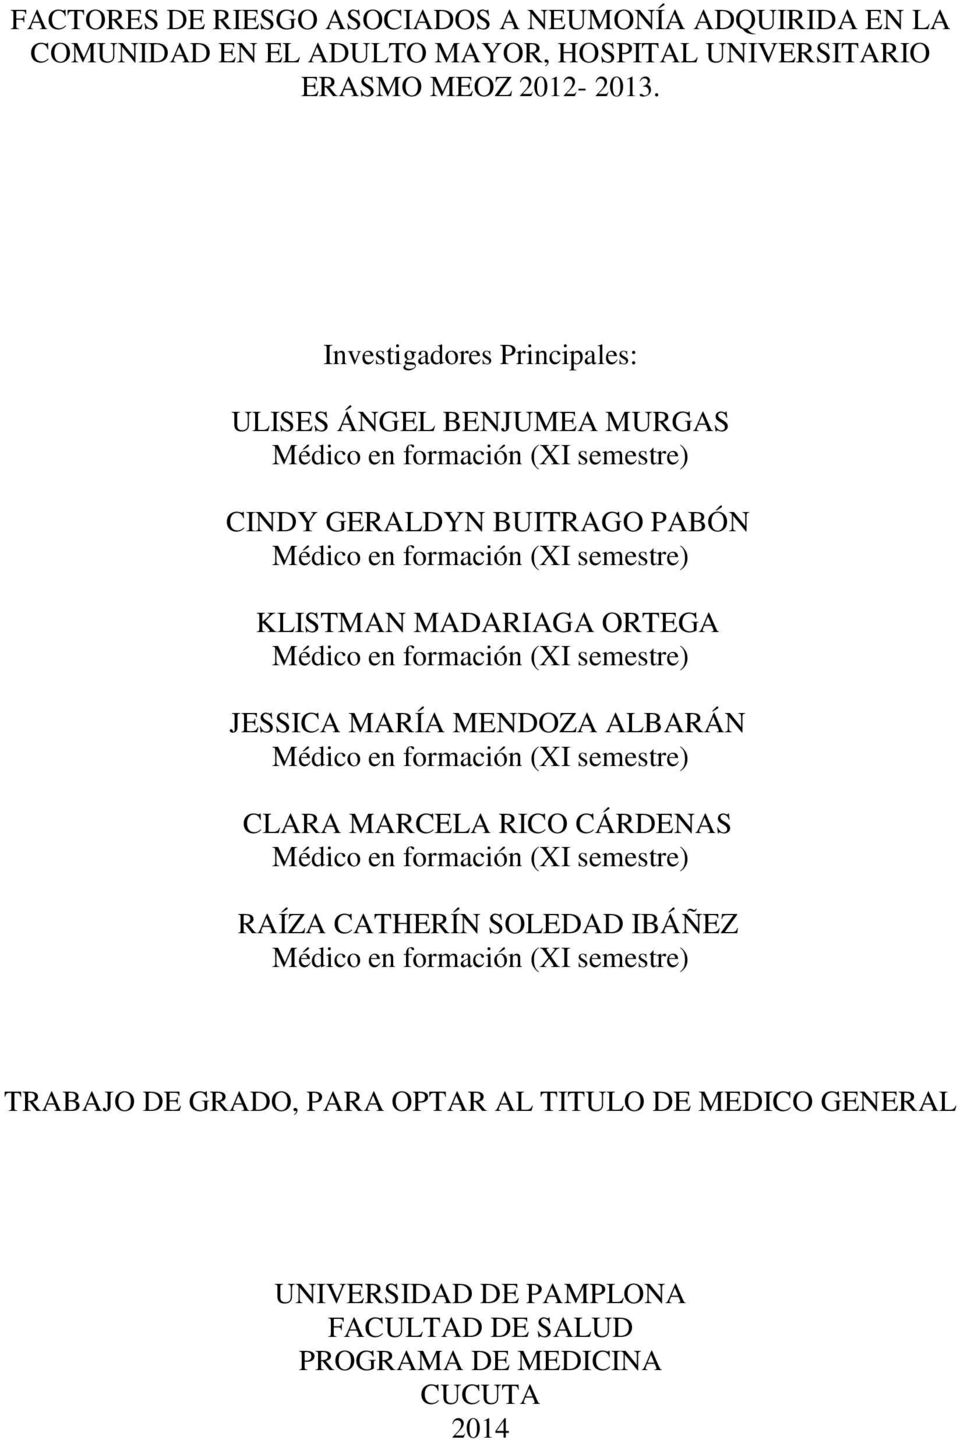 Investigadores Principales: ULISES ÁNGEL BENJUMEA MURGAS CINDY GERALDYN BUITRAGO PABÓN KLISTMAN MADARIAGA ORTEGA